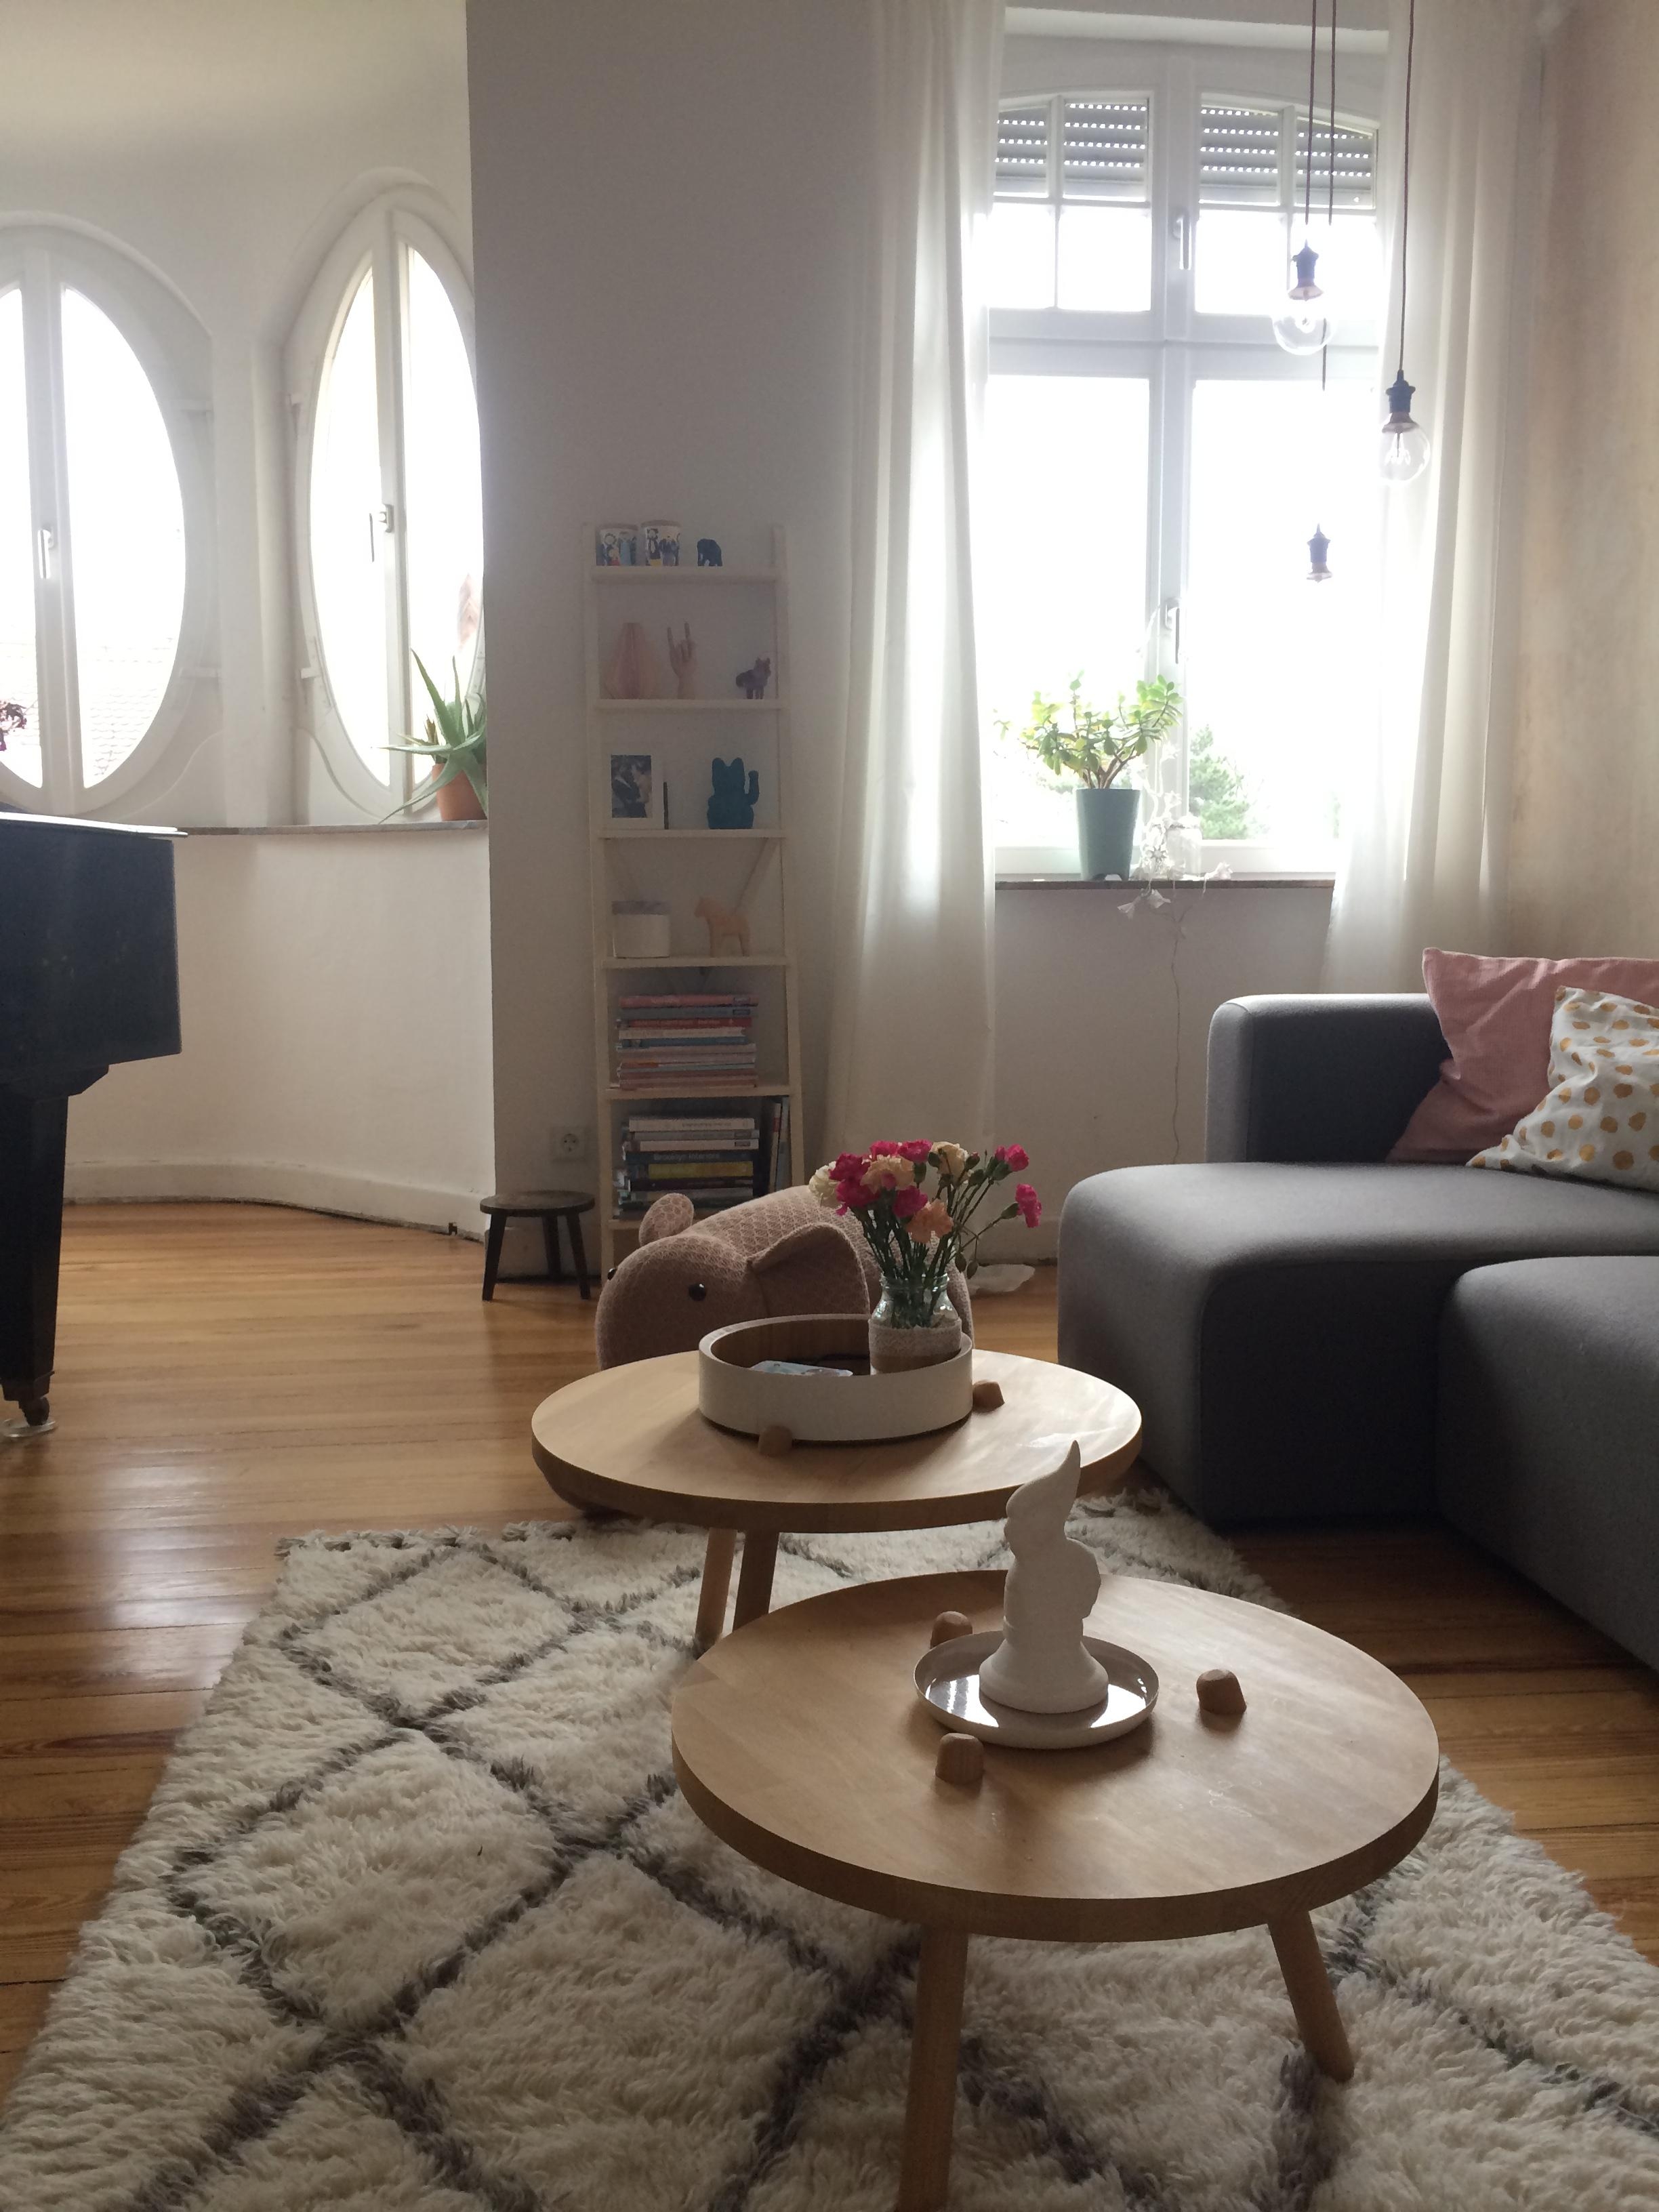 Blick ins Wohnzimmer. 
#interior #living #wohnzimmer #altbauliebe #dielenboden #diy #hygge #skandinavischwohnen